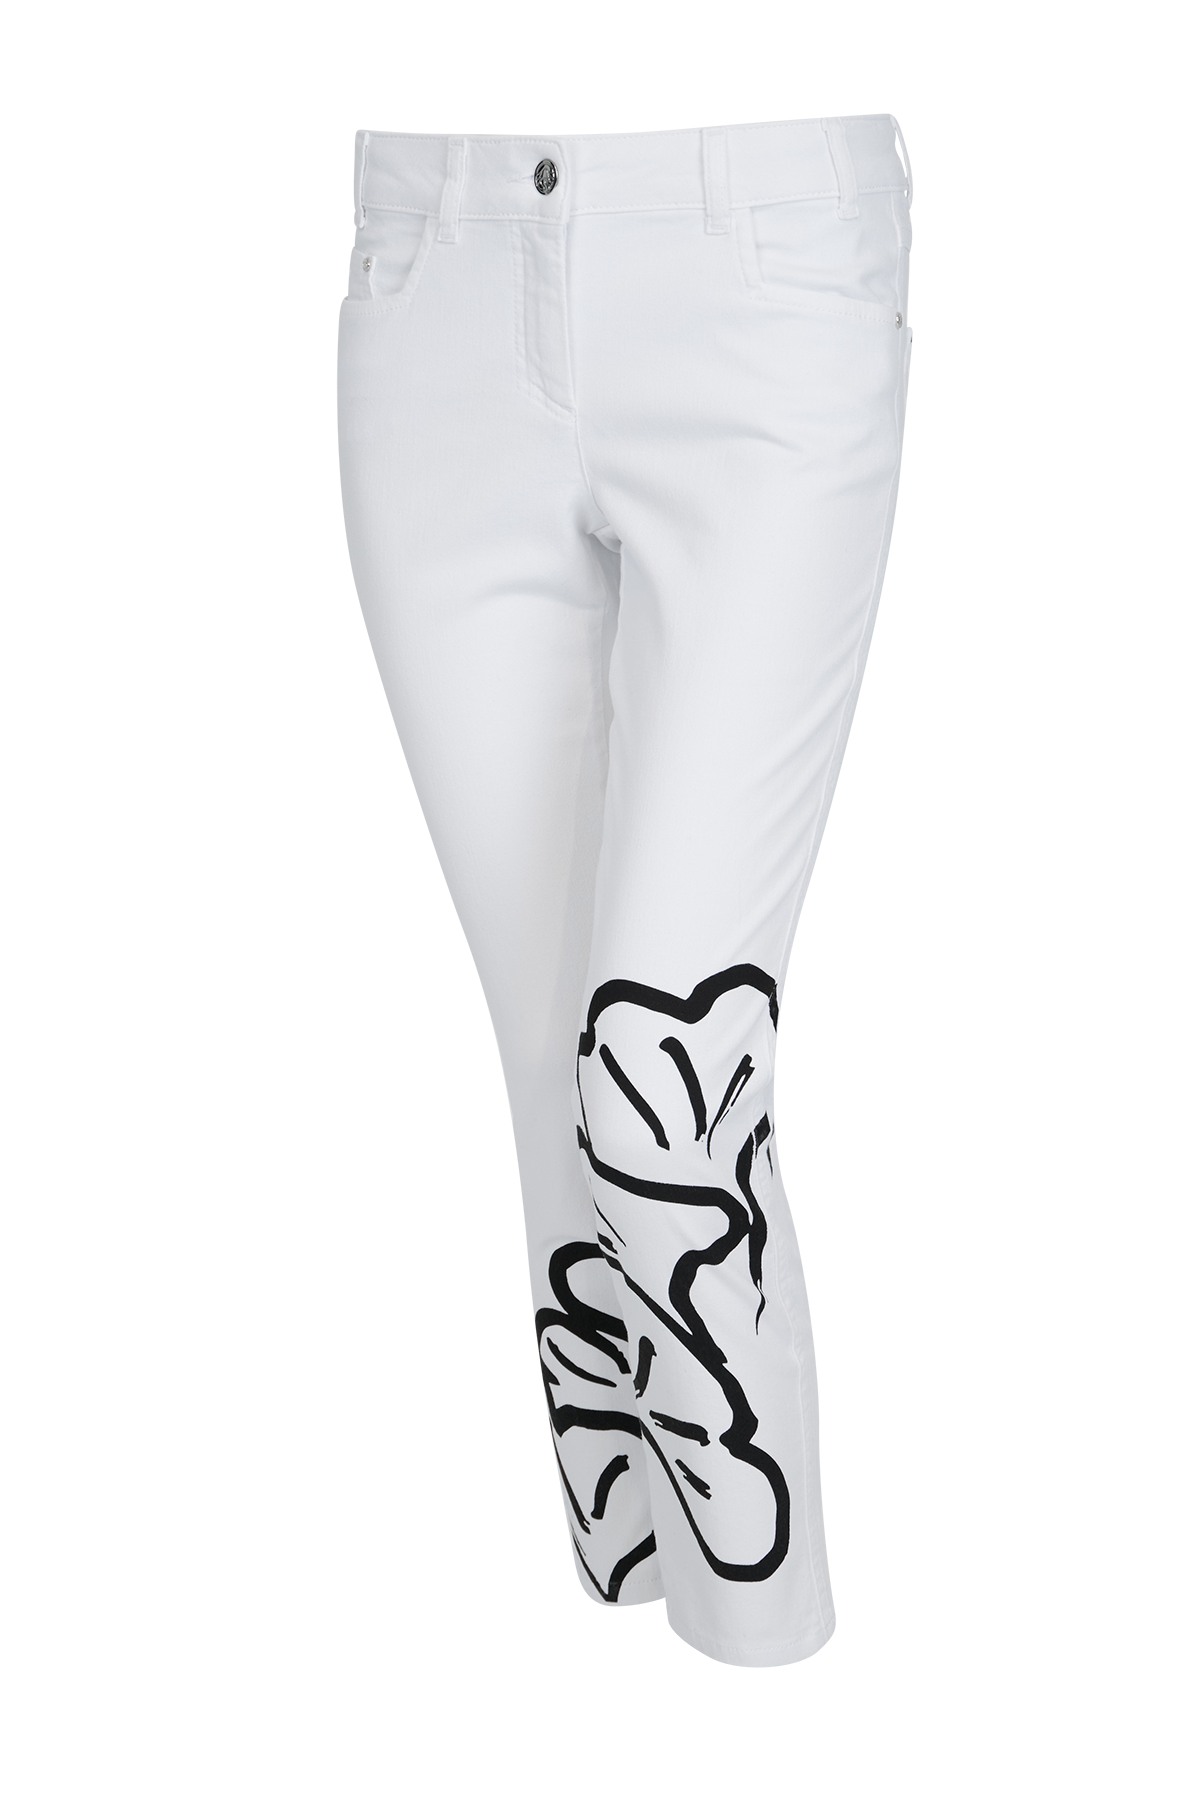 Sportalm kalhoty Valery bright white Velikost: 38